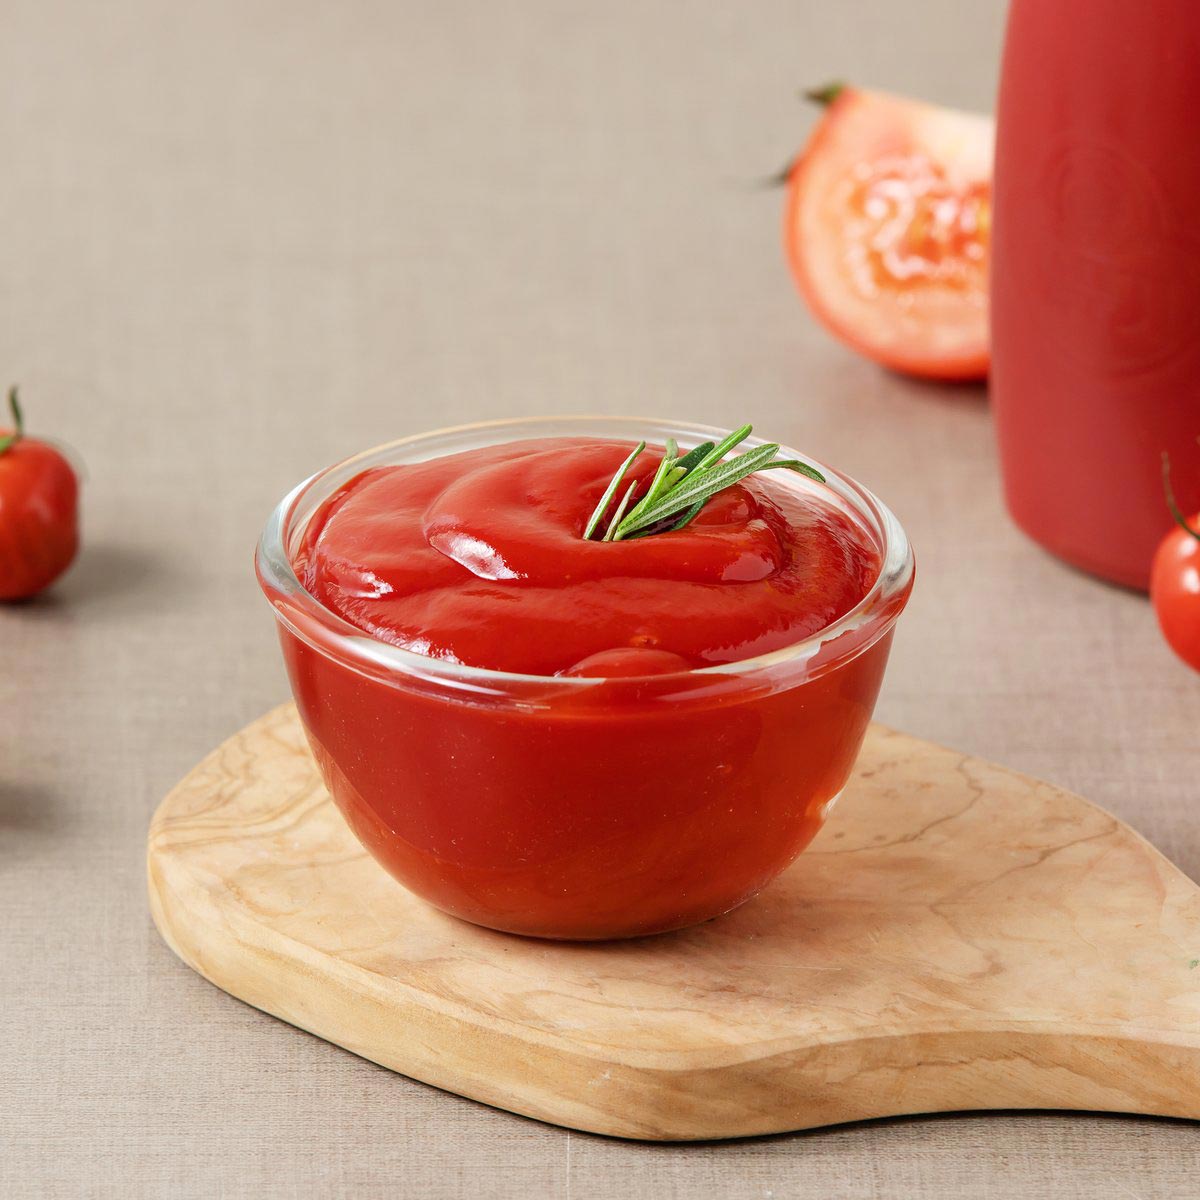 잘 익은 토마토만 사용한 토마토 케찹 빨갛게 잘 익은 토마토만 사용한 오뚜기 토마토 케찹입니다. 새콤달콤한 맛으로 샐러드, 볶음밥, 튀김류 등 어느 음식과도 잘 어울린답니다.